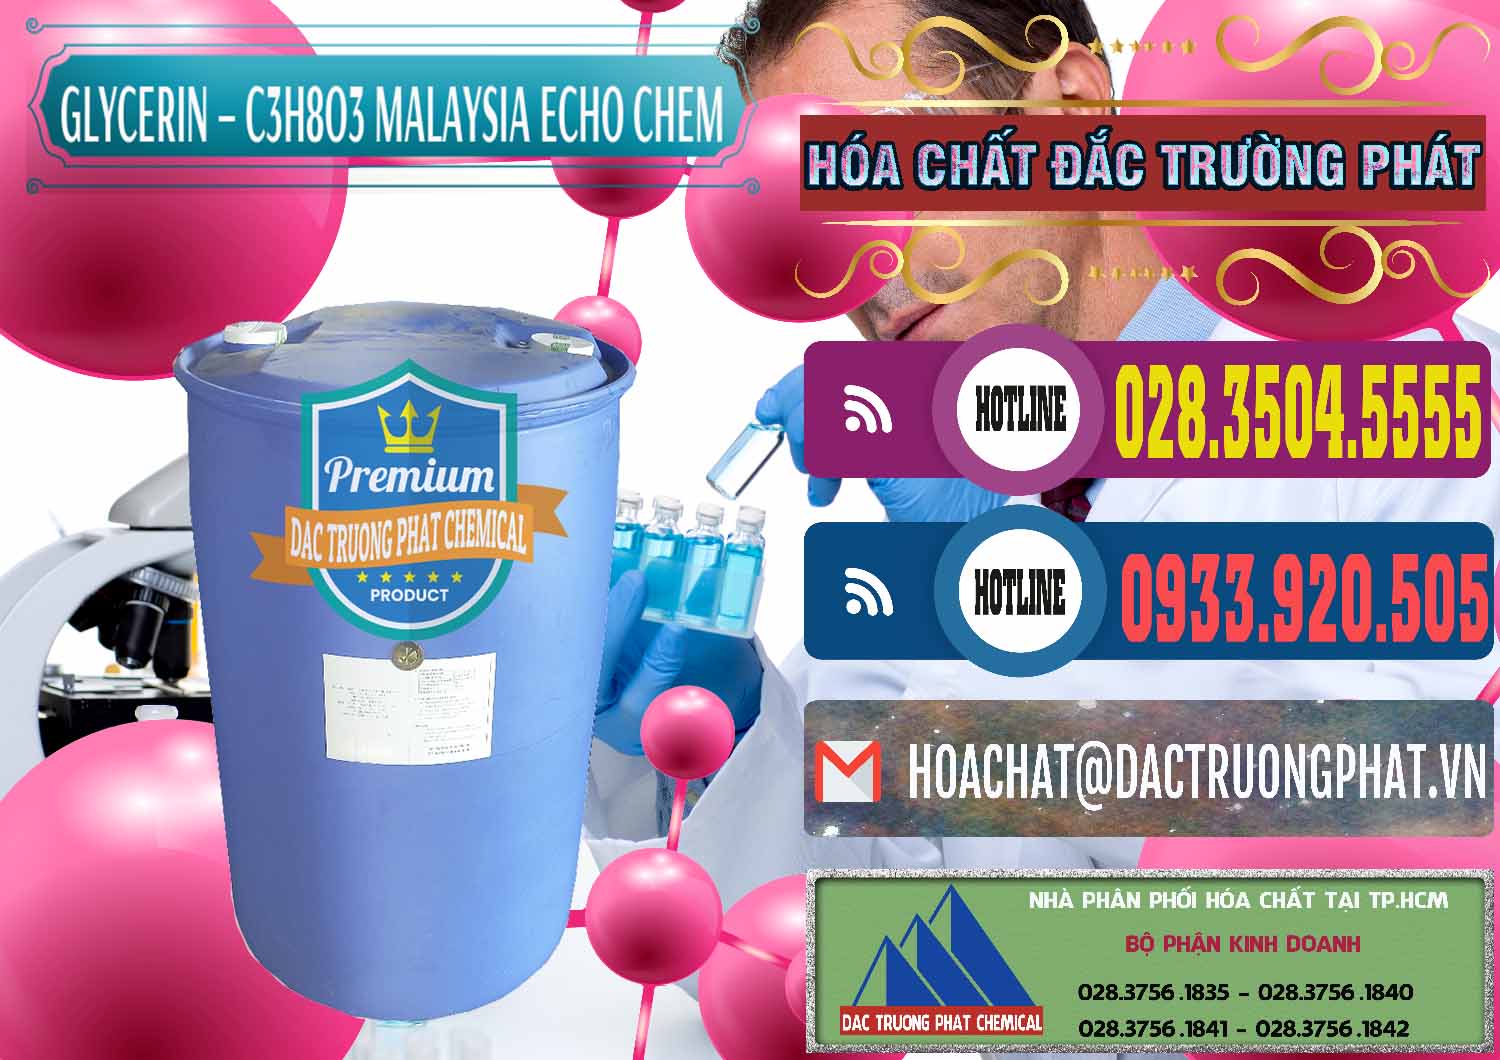 Công ty nhập khẩu _ bán C3H8O3 - Glycerin 99.7% Echo Chem Malaysia - 0273 - Đơn vị cung cấp và bán hóa chất tại TP.HCM - muabanhoachat.com.vn